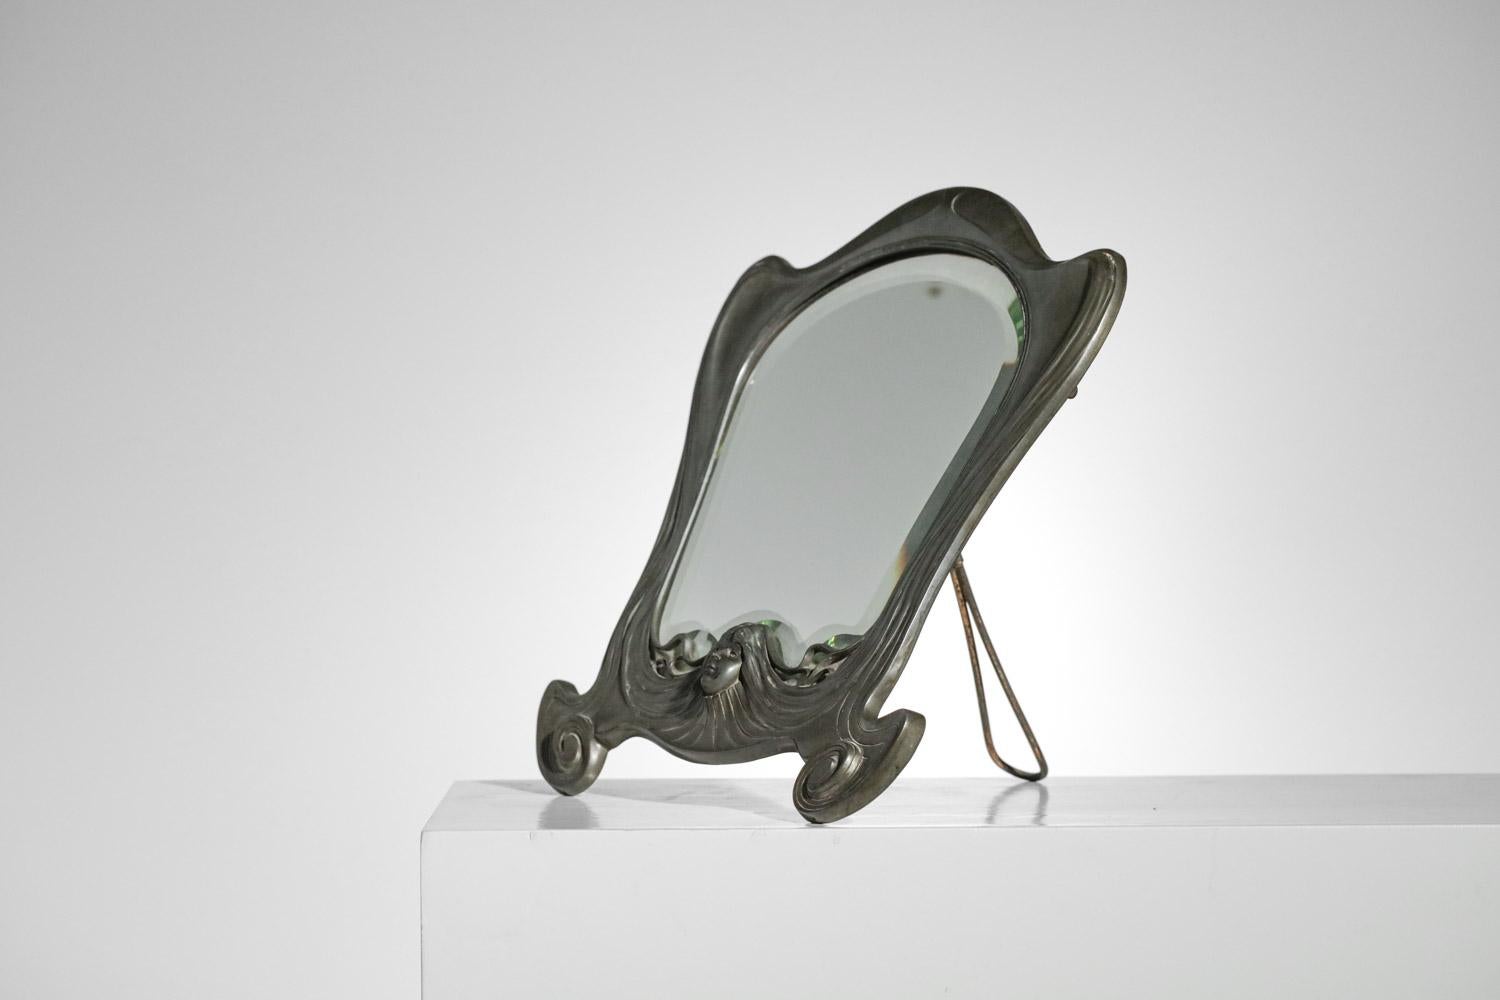 Seltener Jugendstilspiegel aus den 20er Jahren aus der deutschen Fabrik Orivit. Struktur des Spiegels aus massivem Zinn und Spiegel. Sehr schöne Fertigungsdetails auf dem Zinn mit dem Gesicht einer Frau in 3D in einem typischen Jugendstil. Sehr